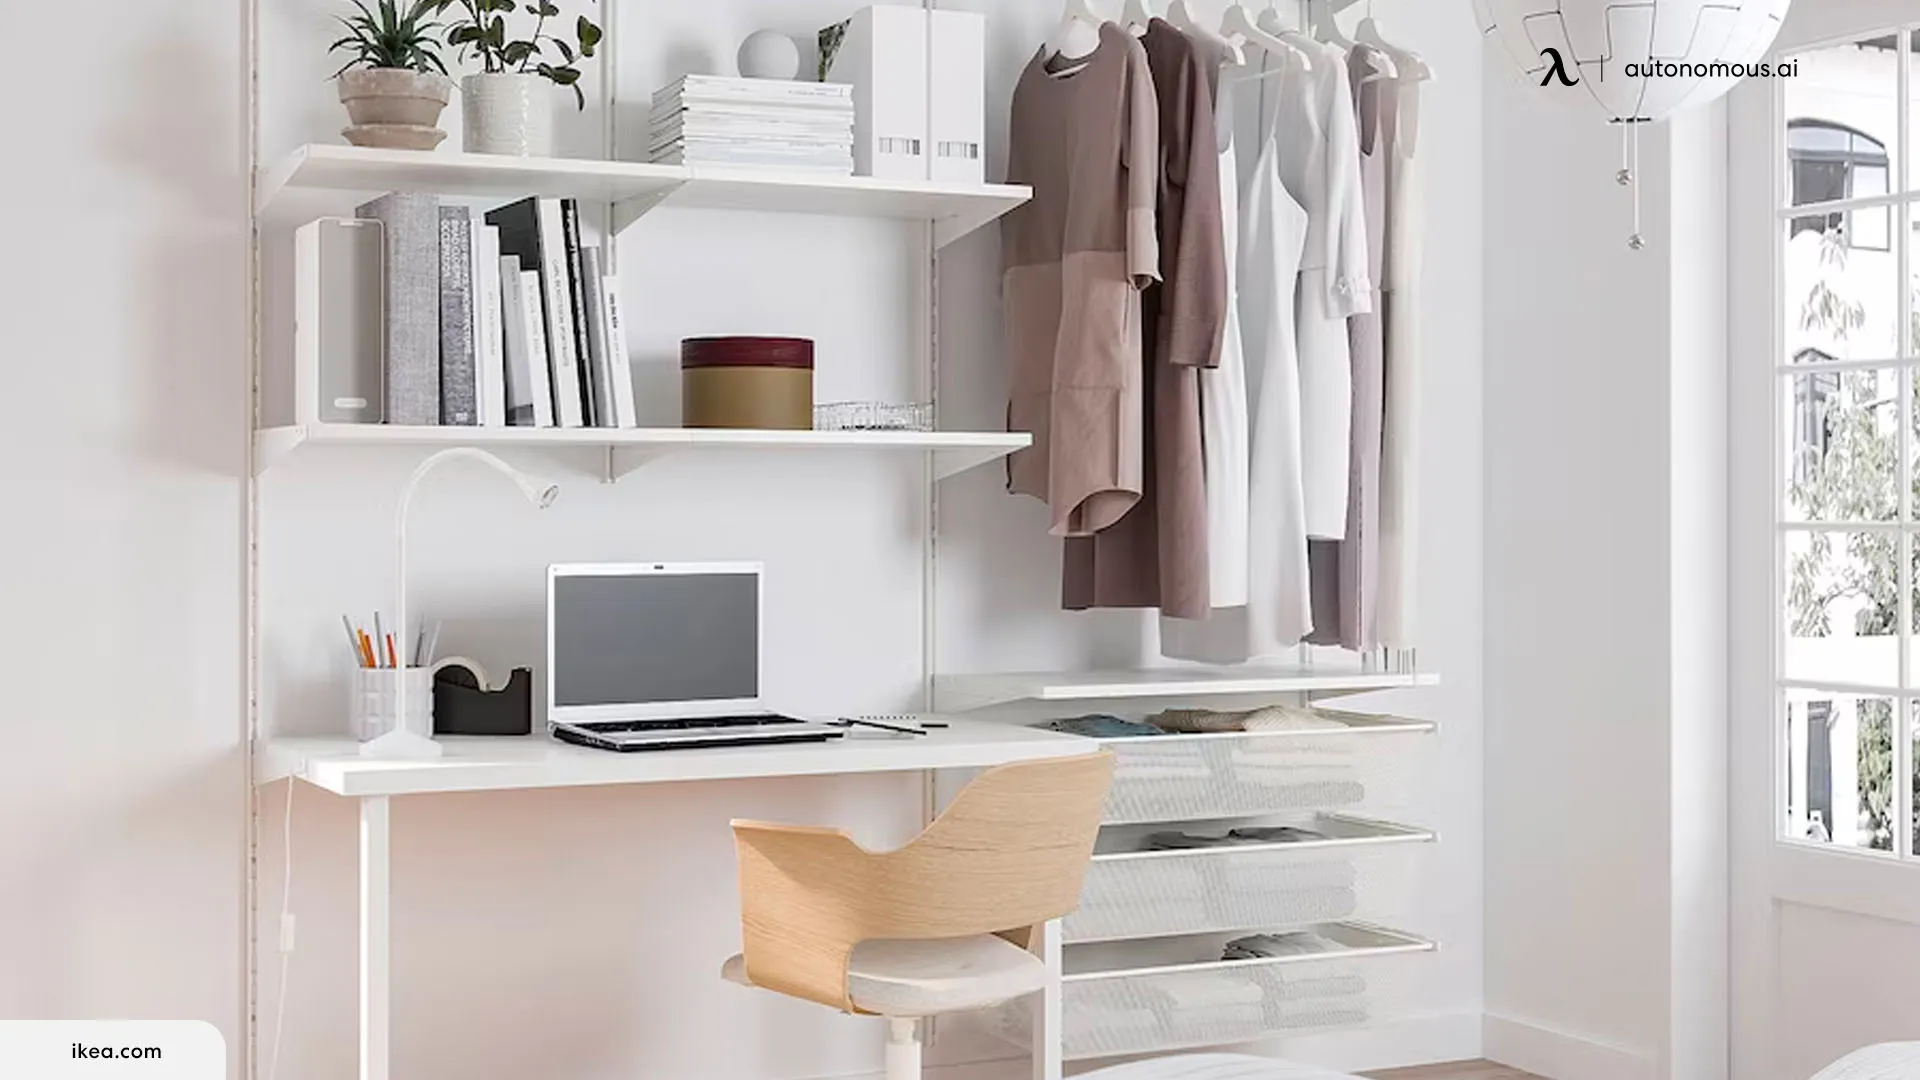 Add Some Shelves to Closet desk